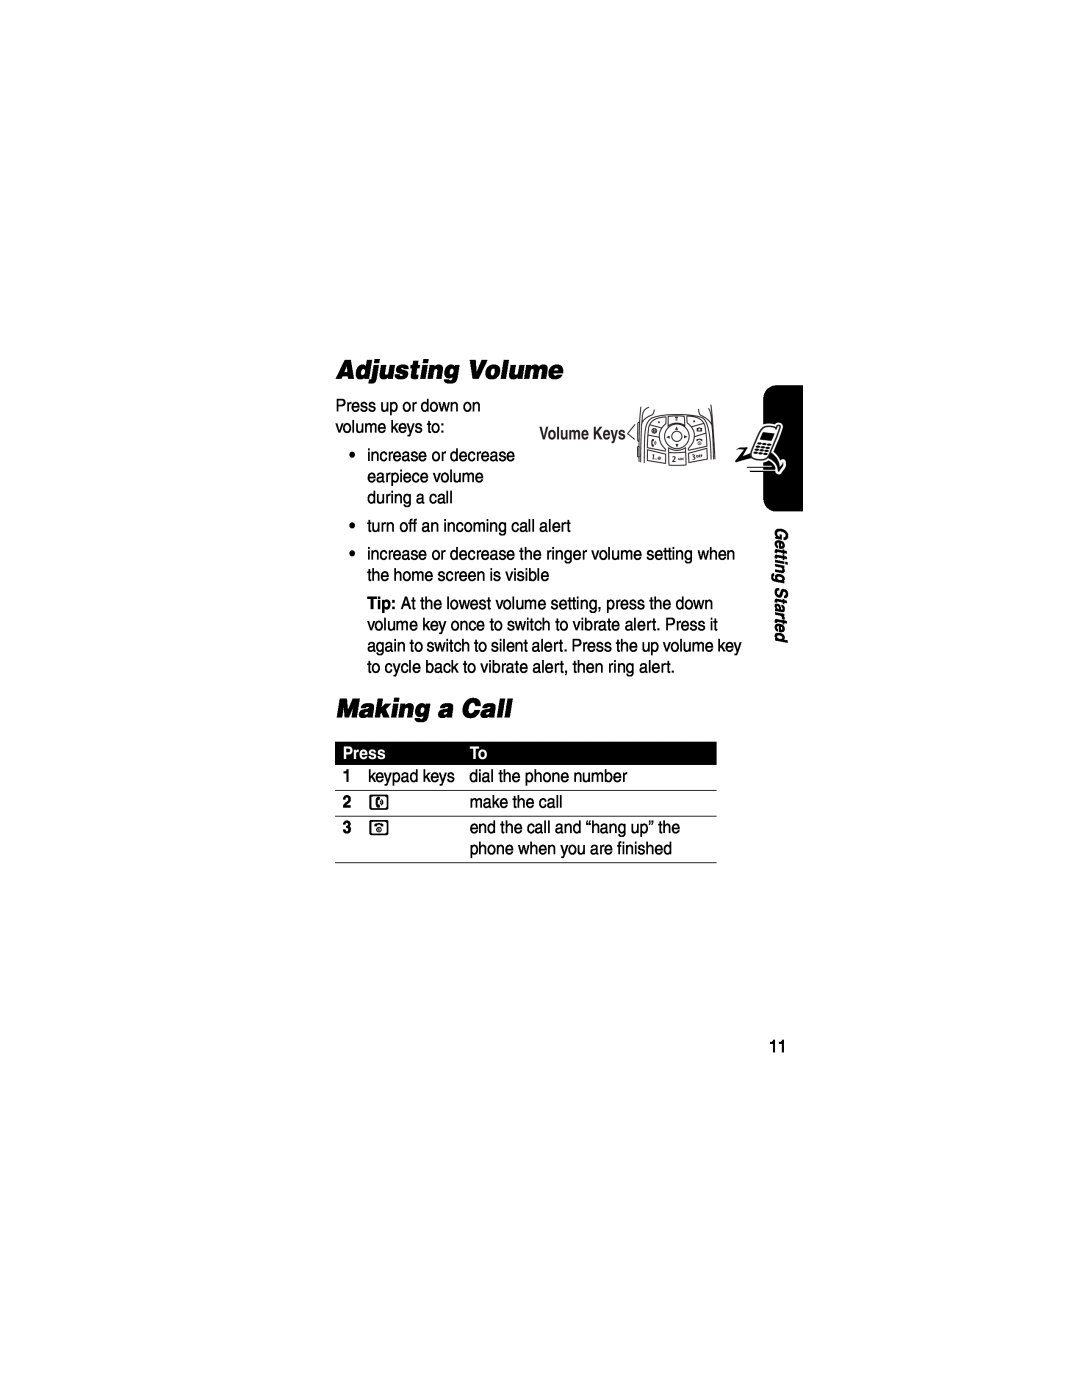 Motorola V551SLVATT manual Adjusting Volume, Making a Call, Press 